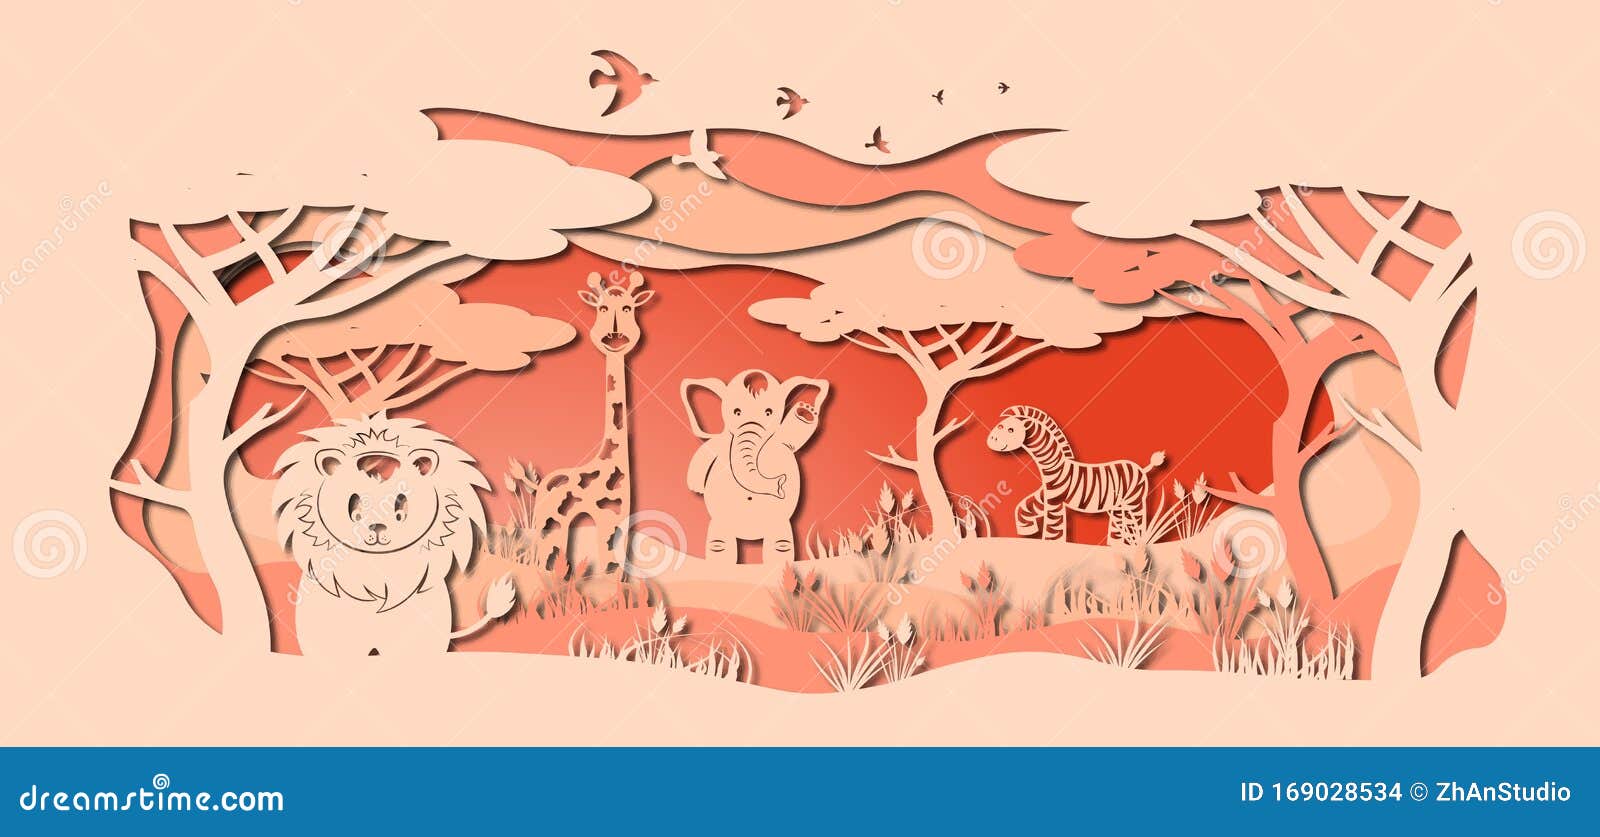 laser cut paper, template for diy scrapbooking. lion, giraffe, elephant, zebra. animals, mammals, wildlife, bird, tree, grass,